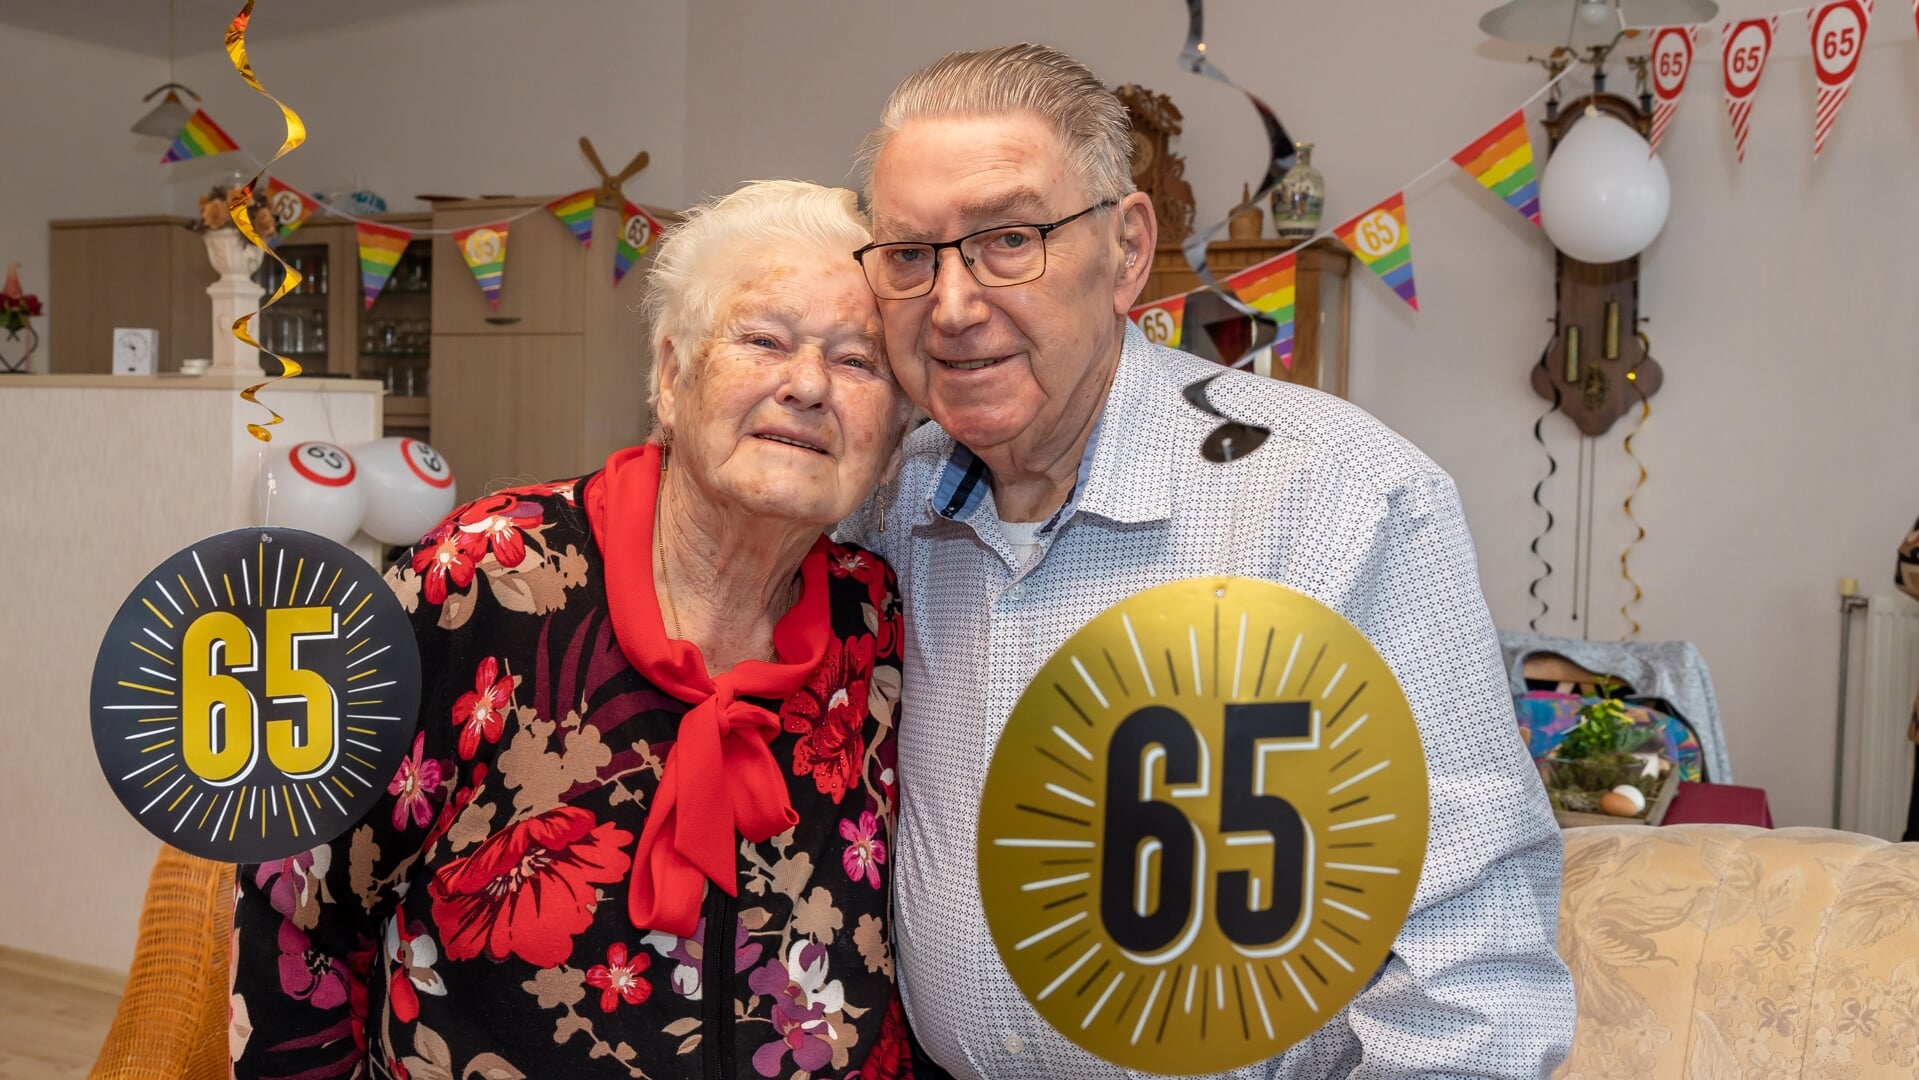 De heer en mevrouw Epping - Pomper zijn 65 jaar getrouwd